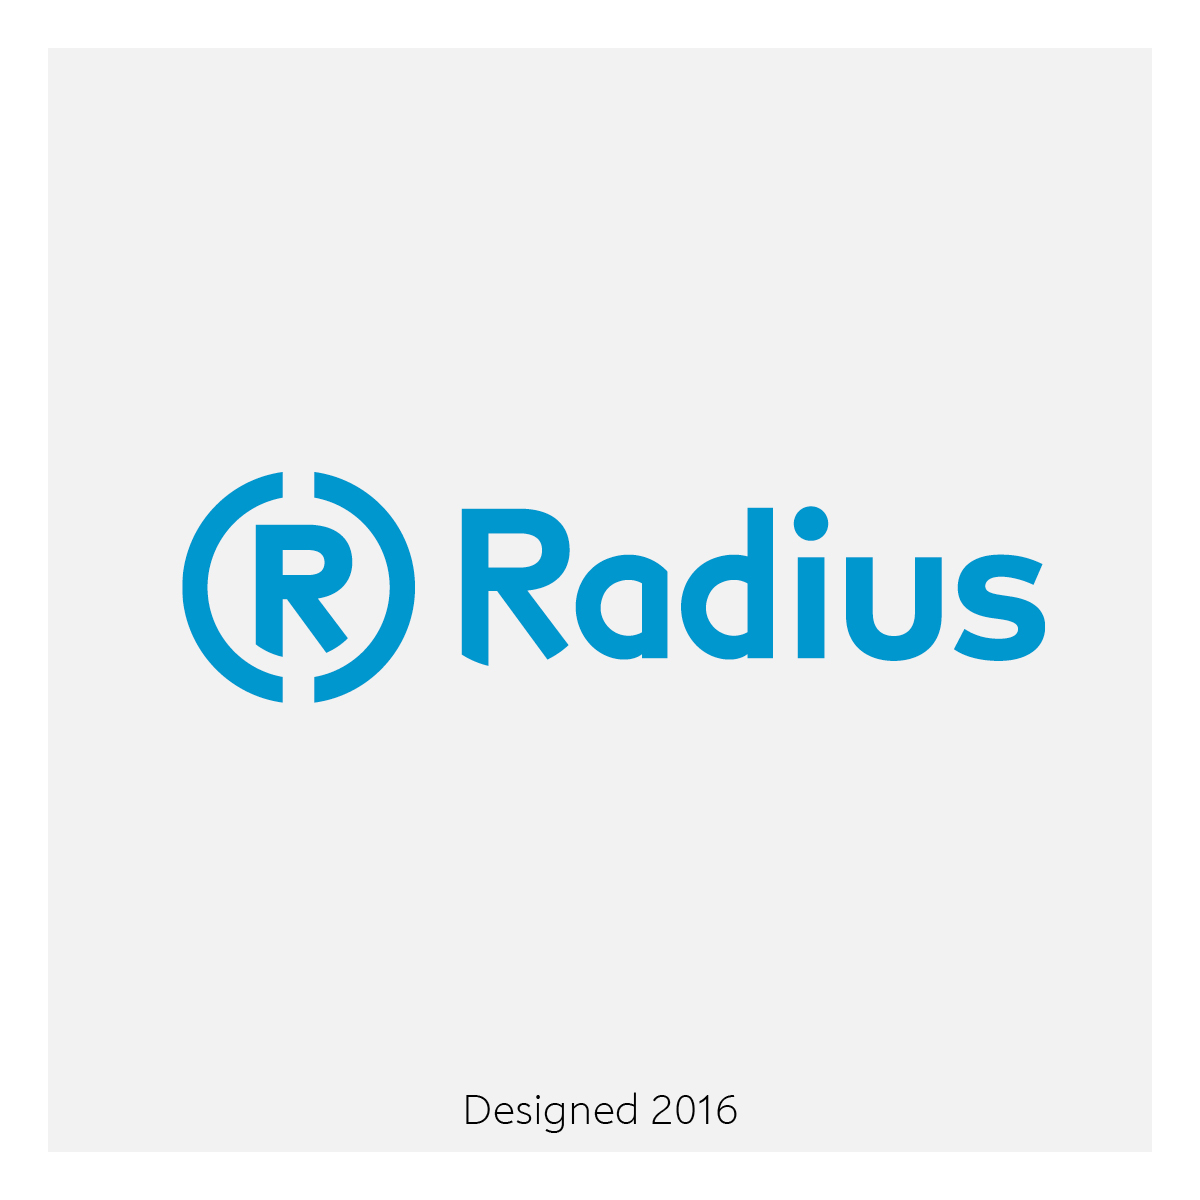 Radius Logistics Logo Design | Etude Digital